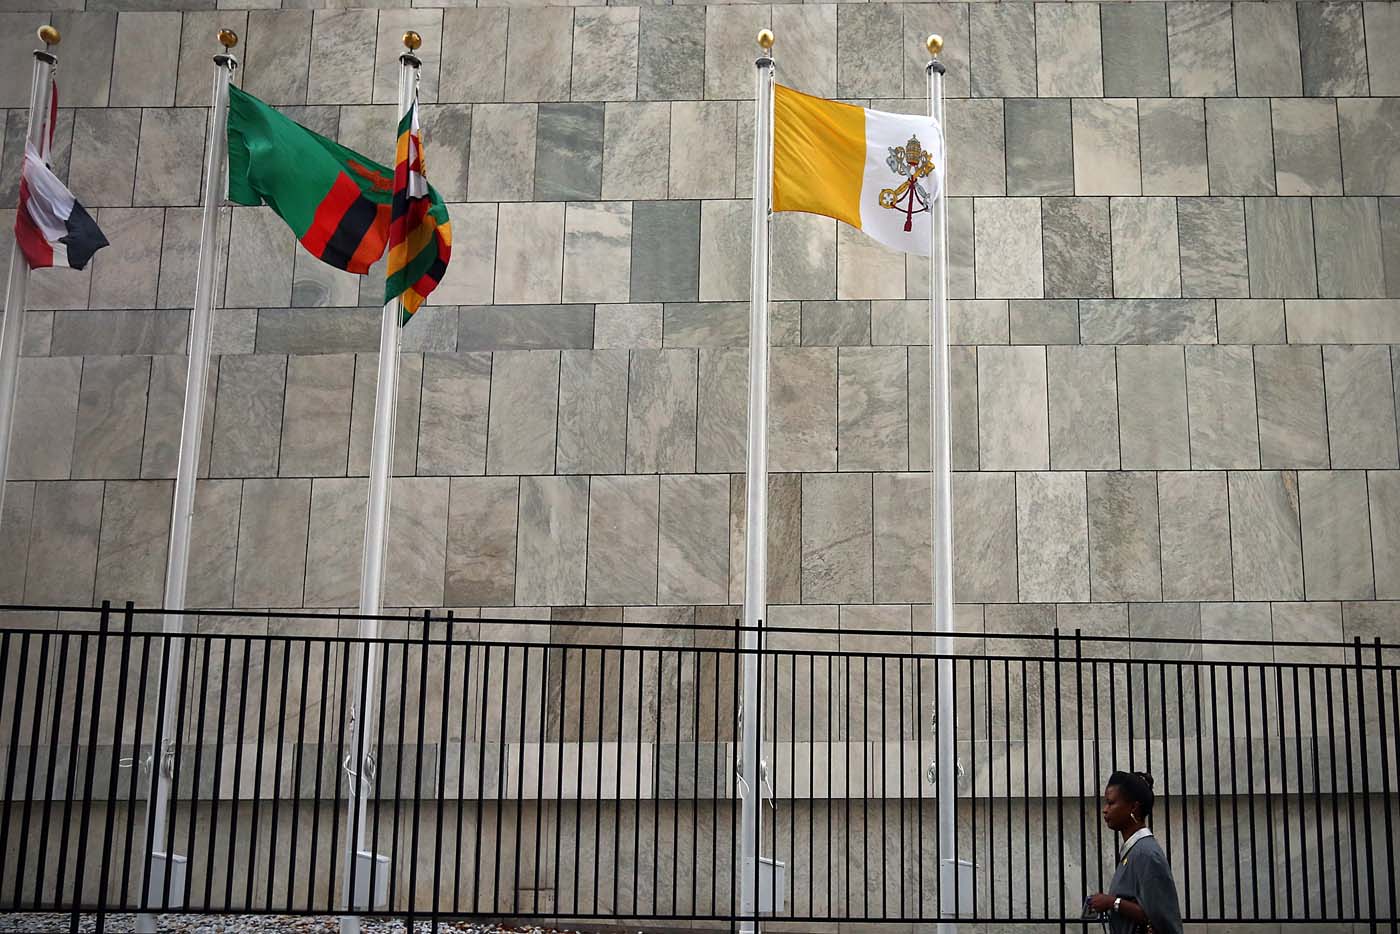 La bandera del Vaticano ondea por primera vez en la ONU (Fotos)